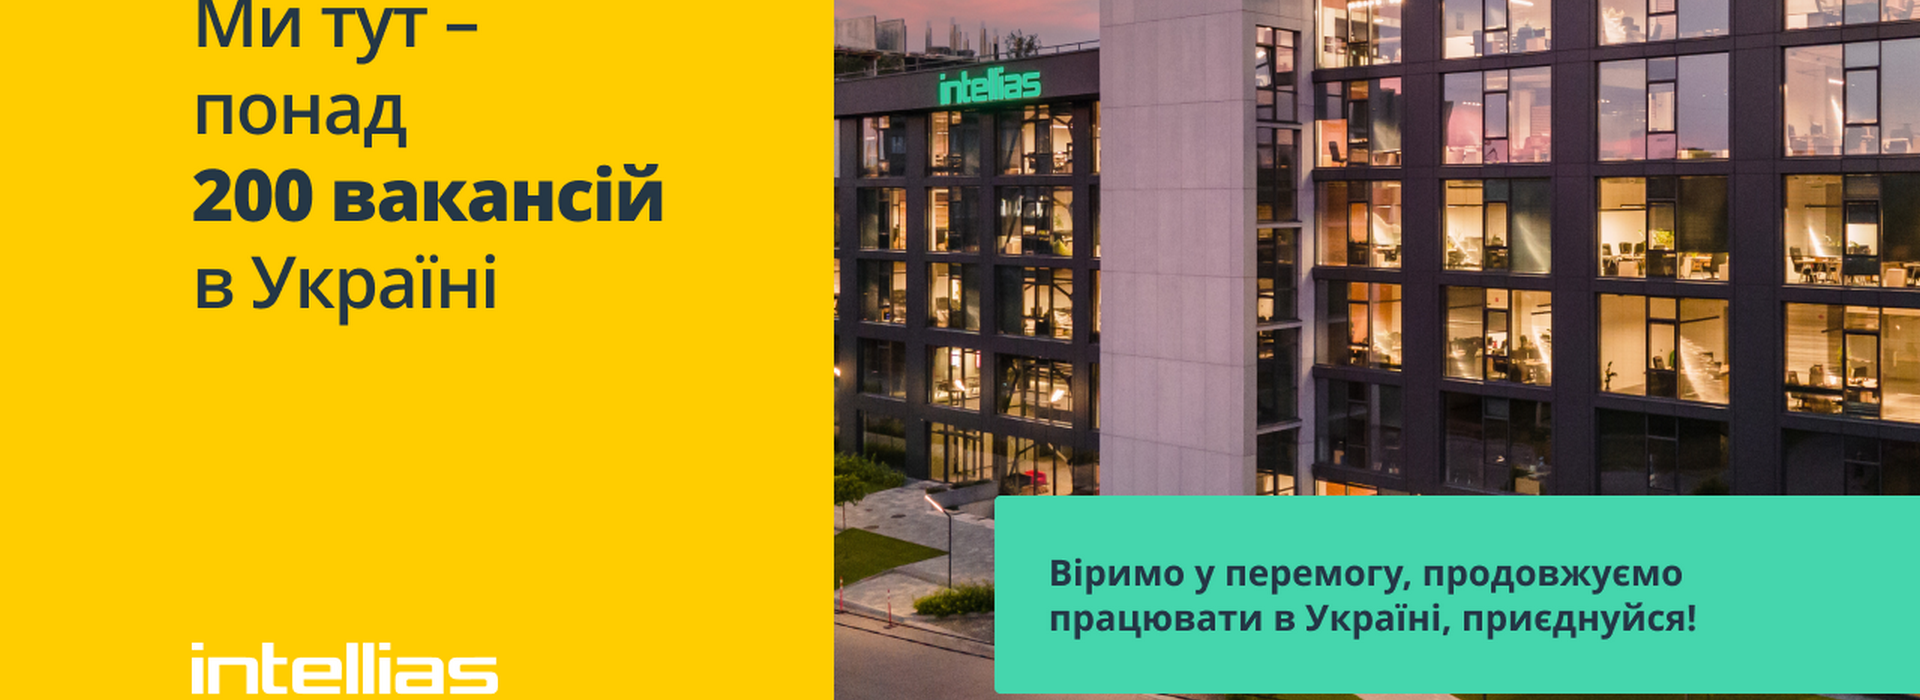 Intellias пропонує понад 200 вакансій для українських спеціалістів